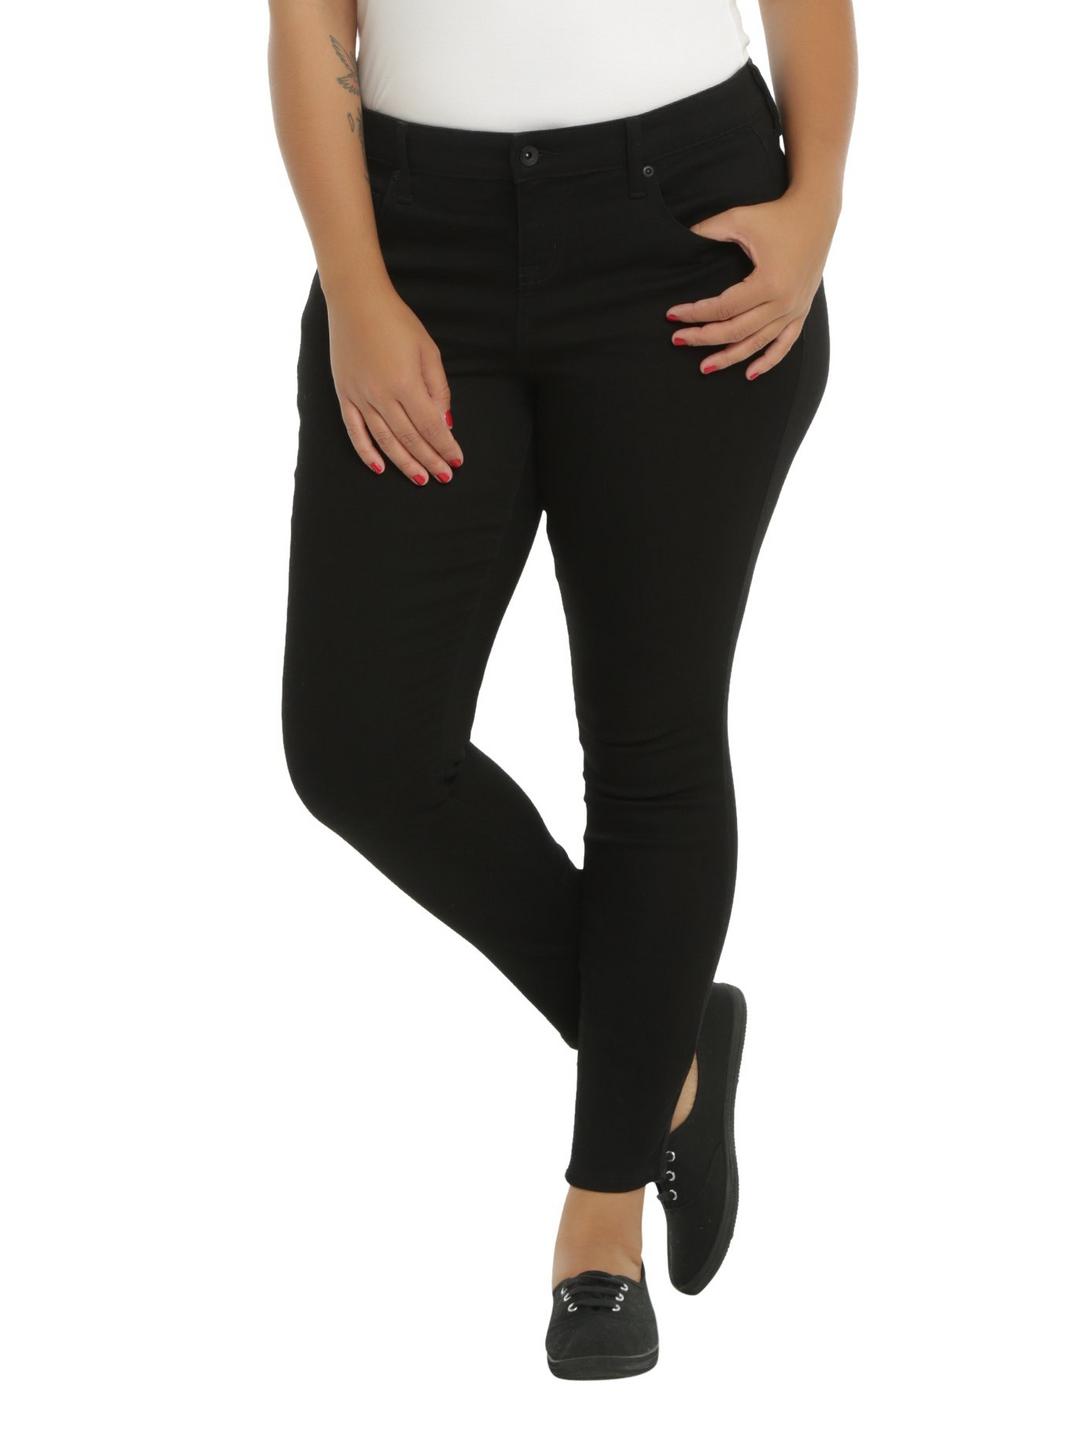 Blackheart Black Skinny Jeans Plus Size, BLACK, hi-res